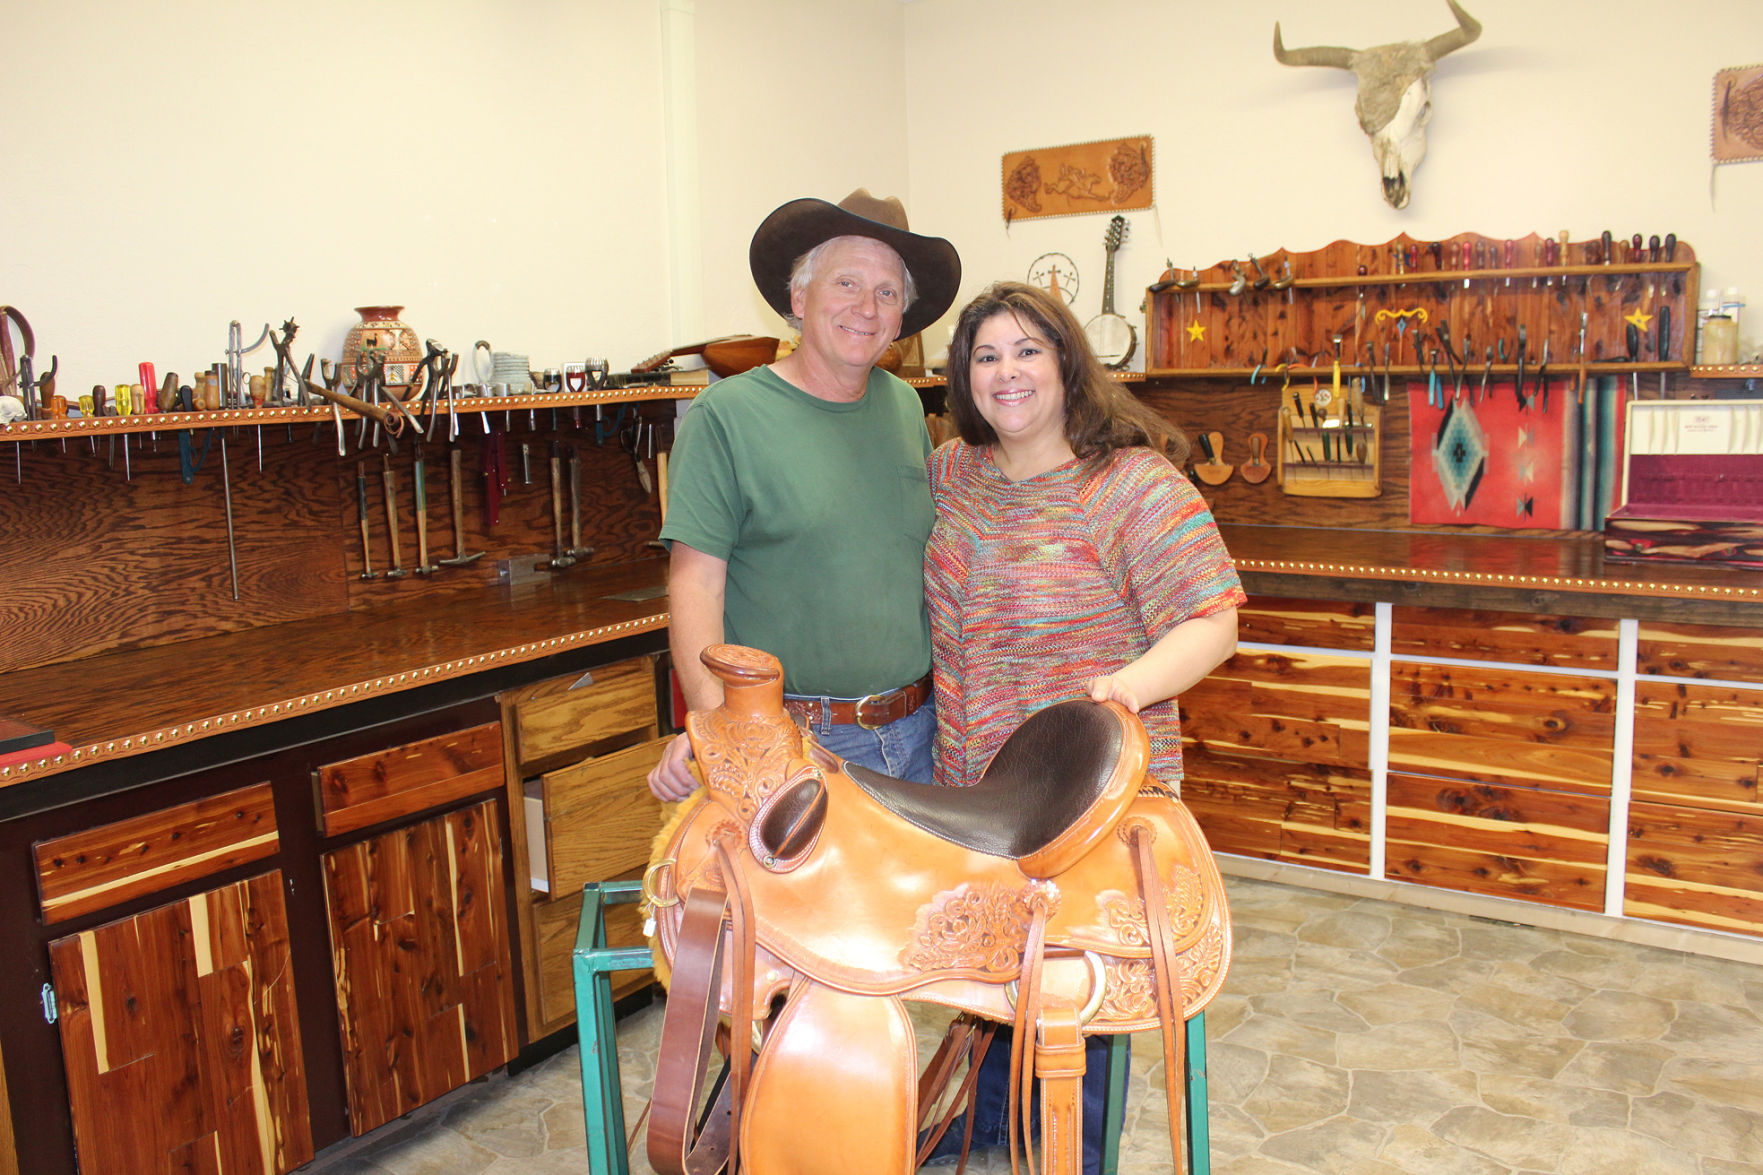 saddle shop